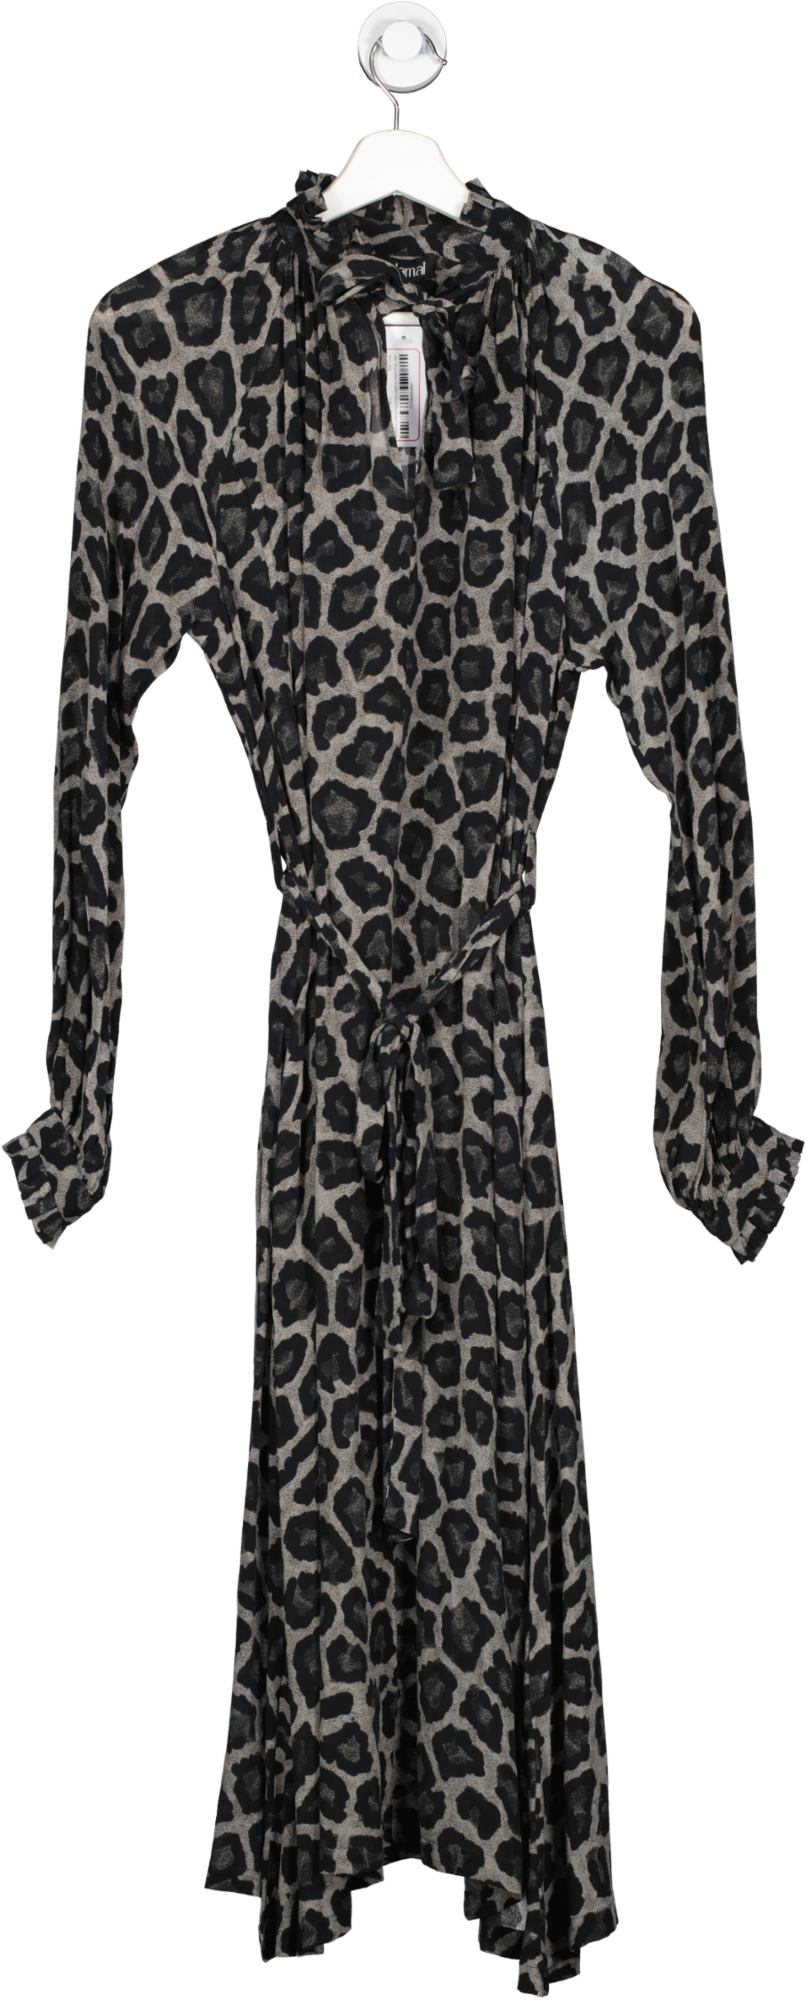 Rdalamal Grey Leopard Print Midi Dress UK 6